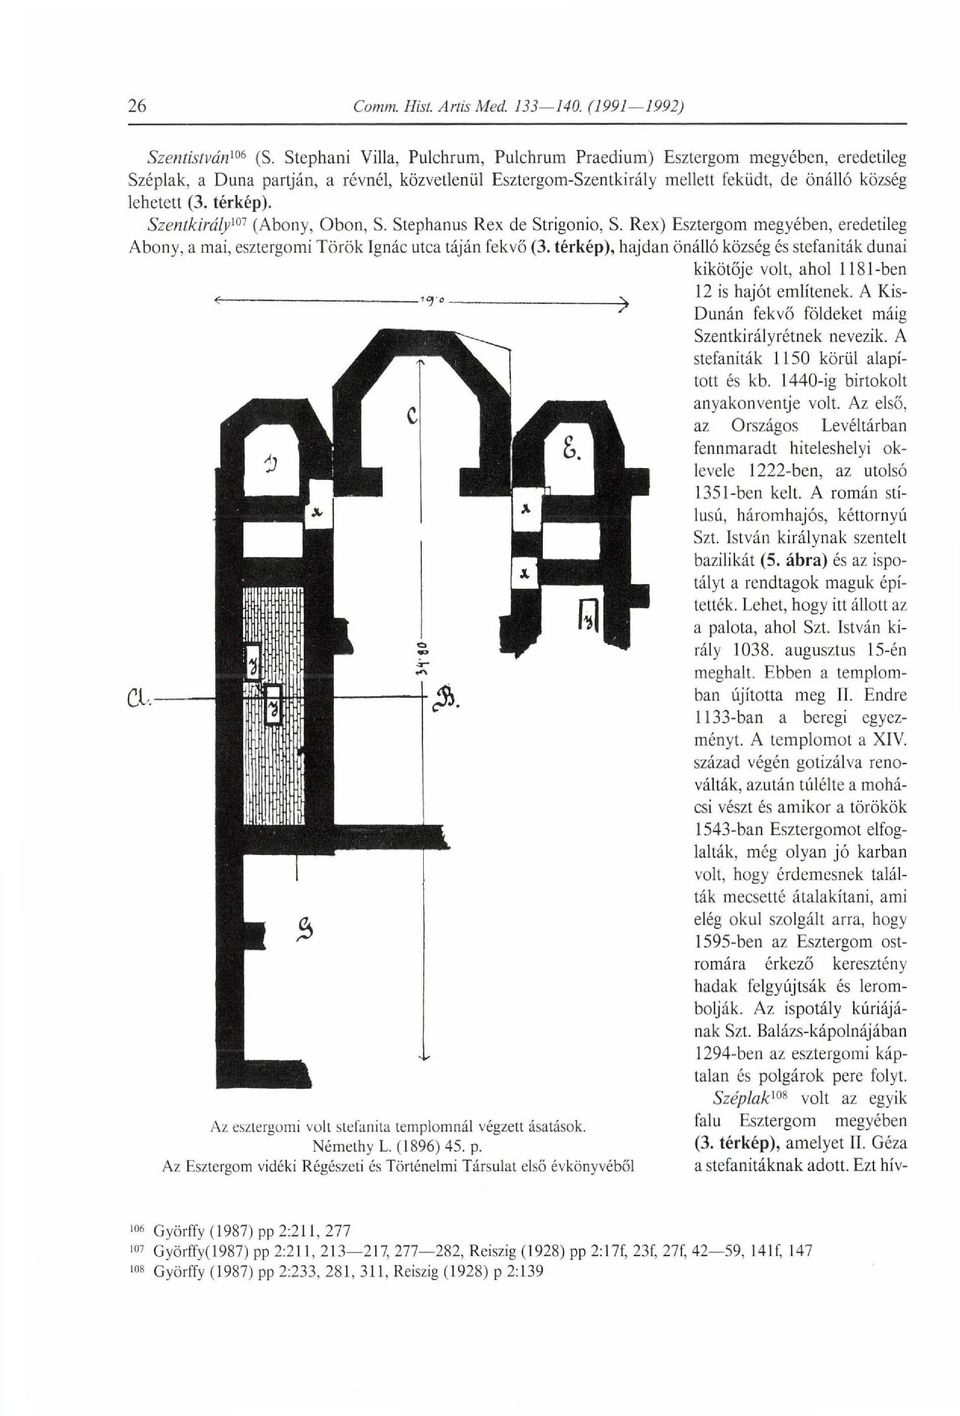 Szentkirály 1 (Abony, Obon, S. Stephanus Rex de Strigonio, S. Rex) Esztergom megyében, eredetileg Abony, a mai, esztergomi Török Ignác utca táján fekvő (3.